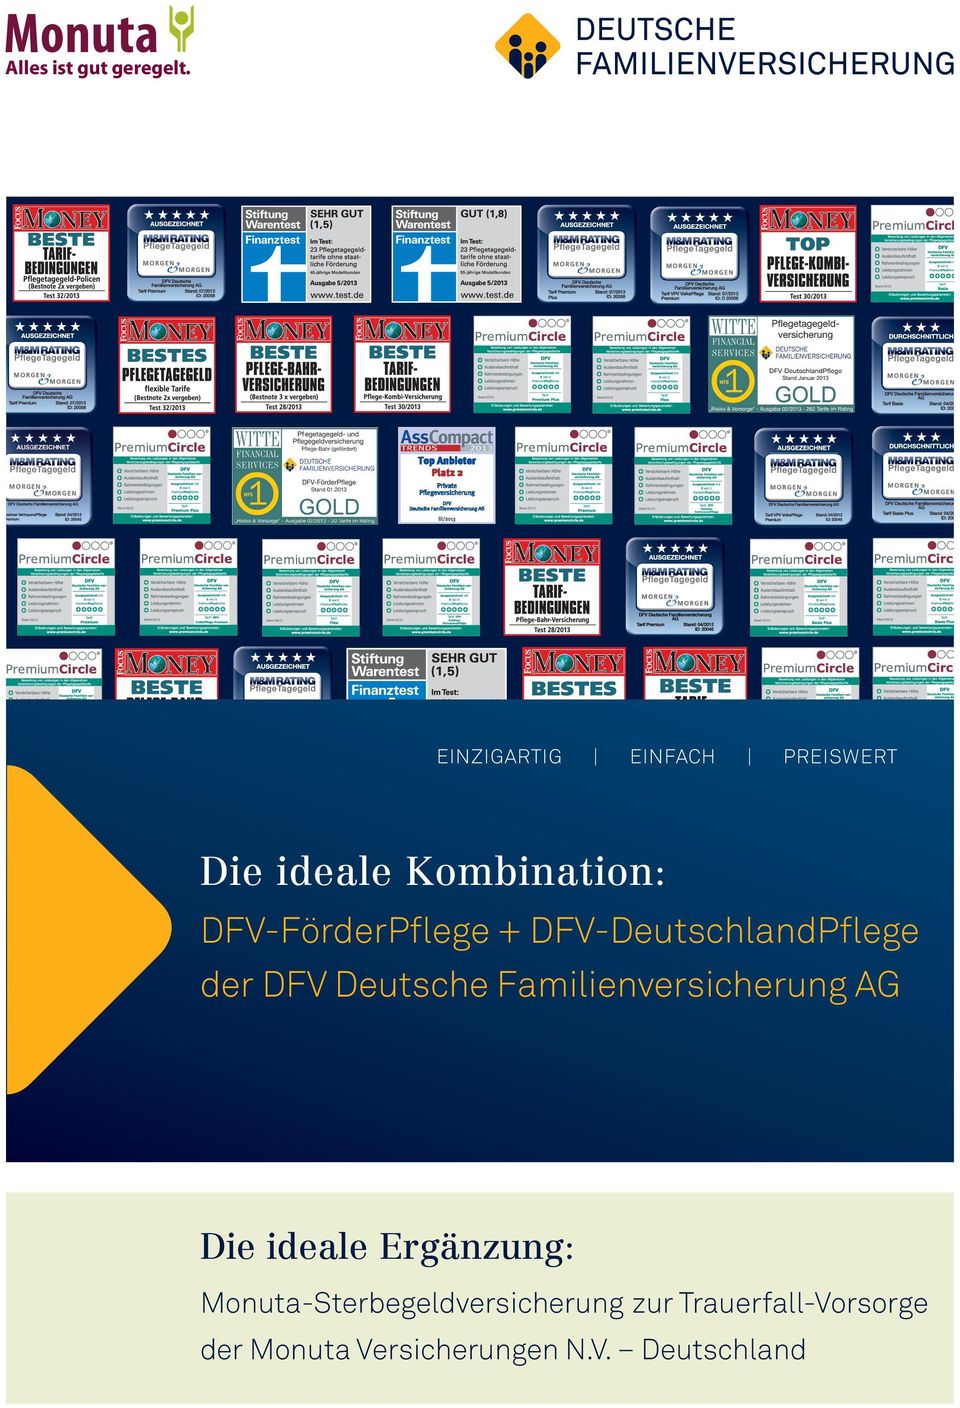 DFV-FörderPflege DFV-DeutschlandPflege der DFV Deutsche